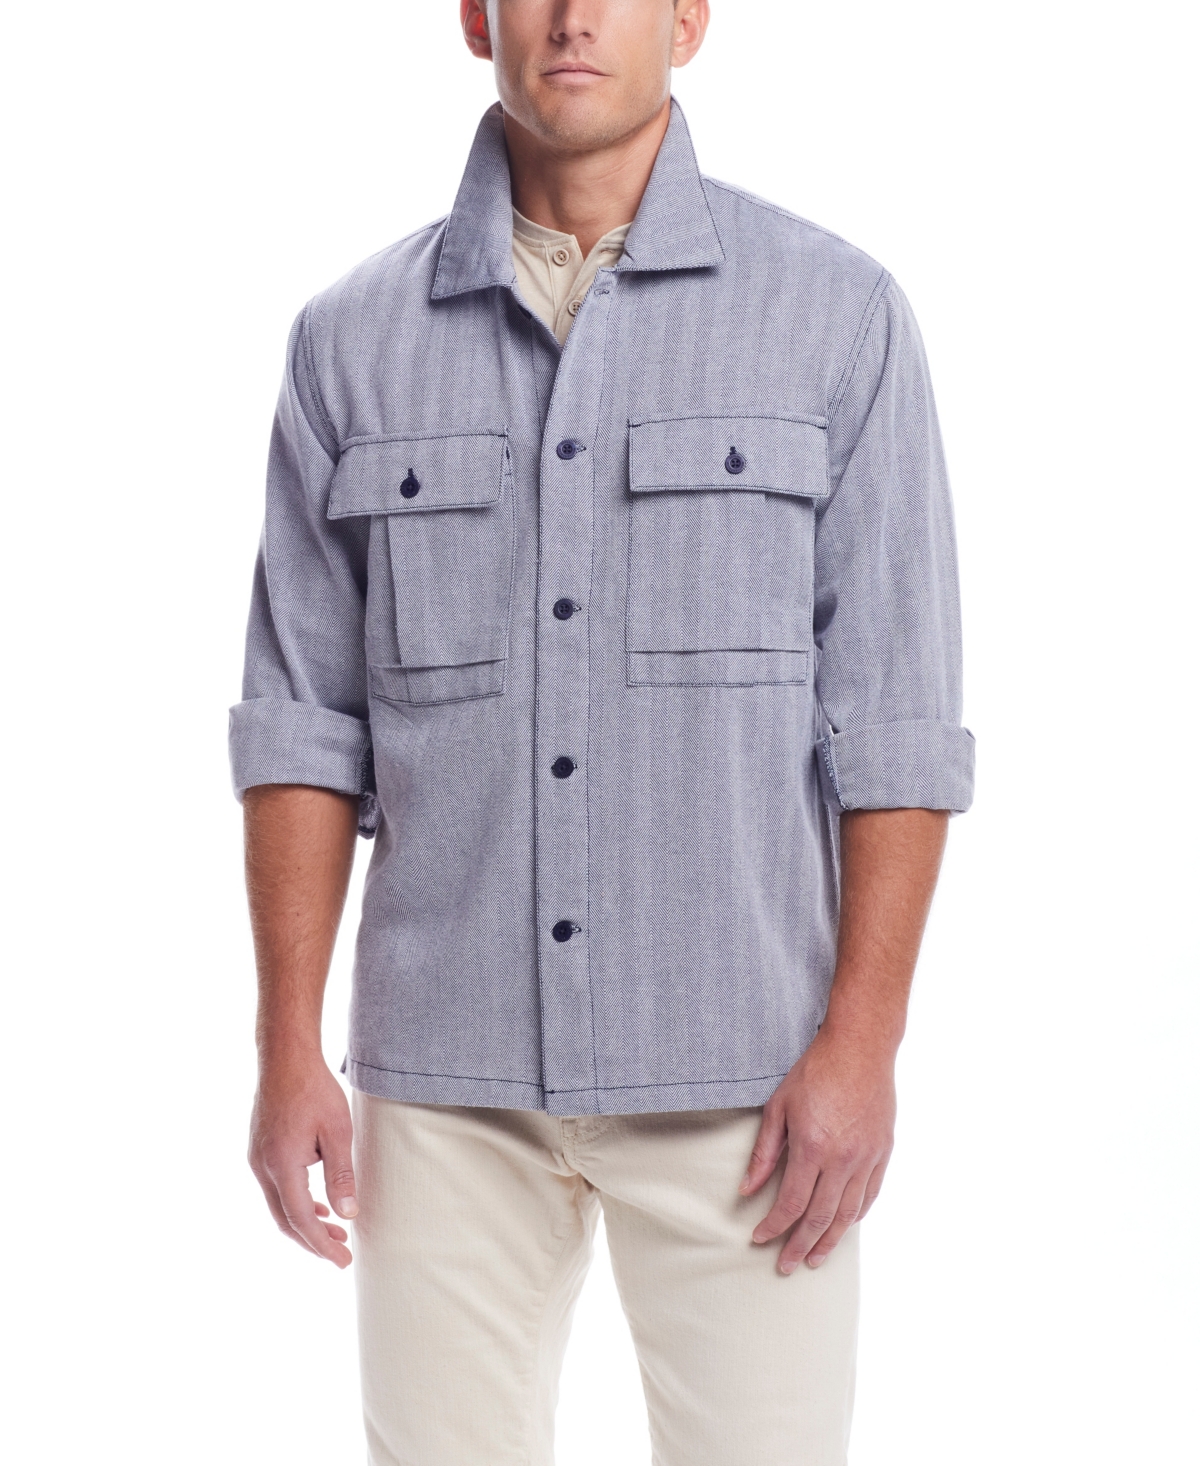 Weatherproof Vintage Men's Summer Long Sleeve Shirt Jacket In Navy